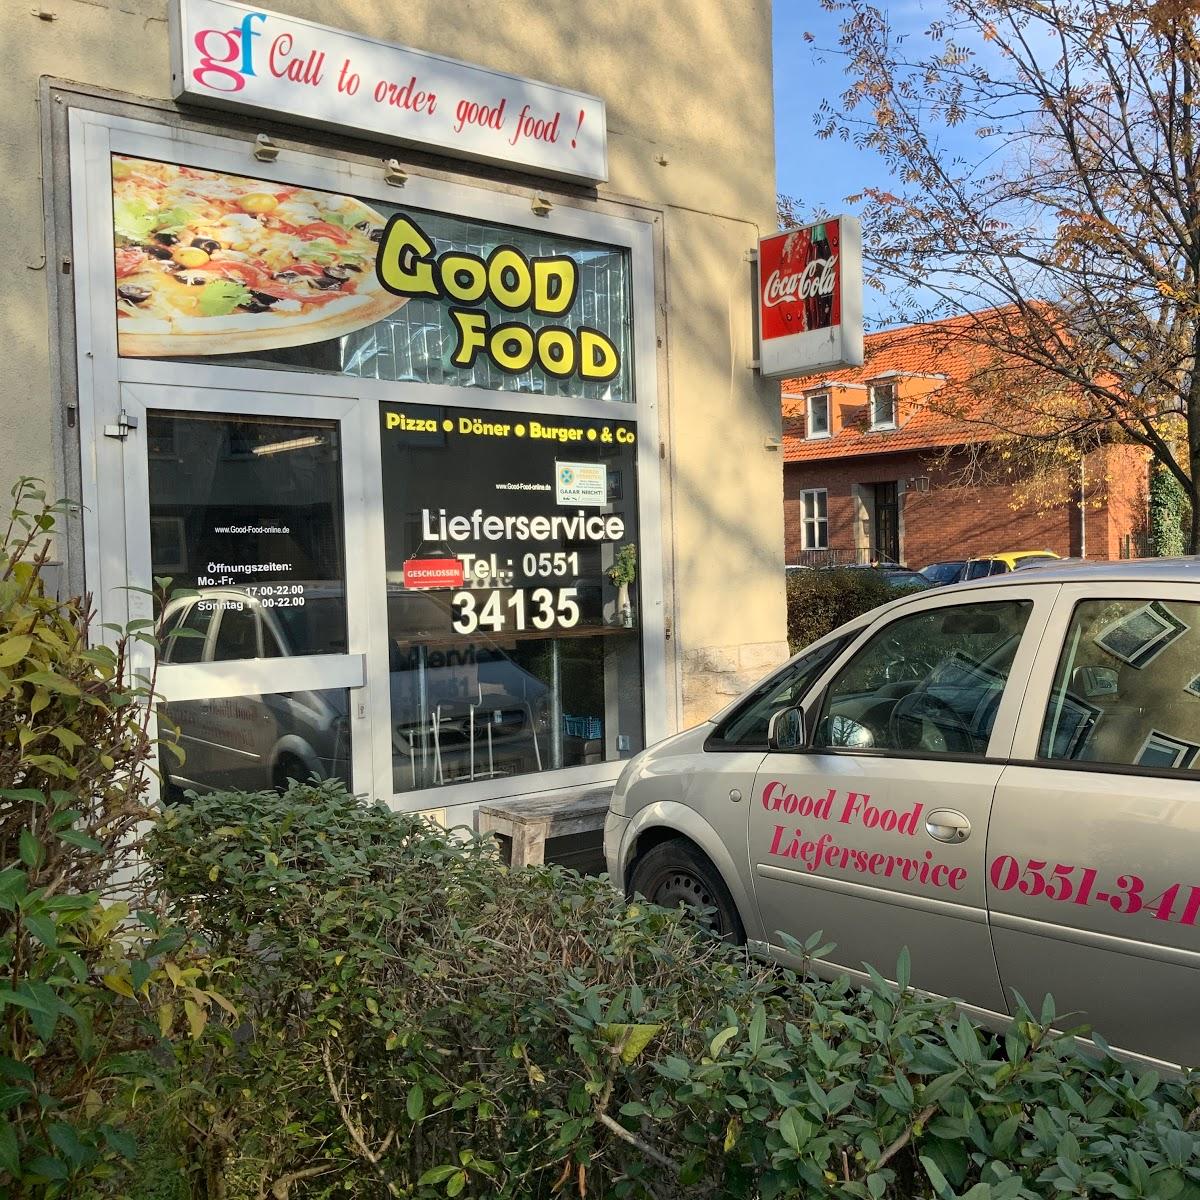 Restaurant "Good Food" in Göttingen